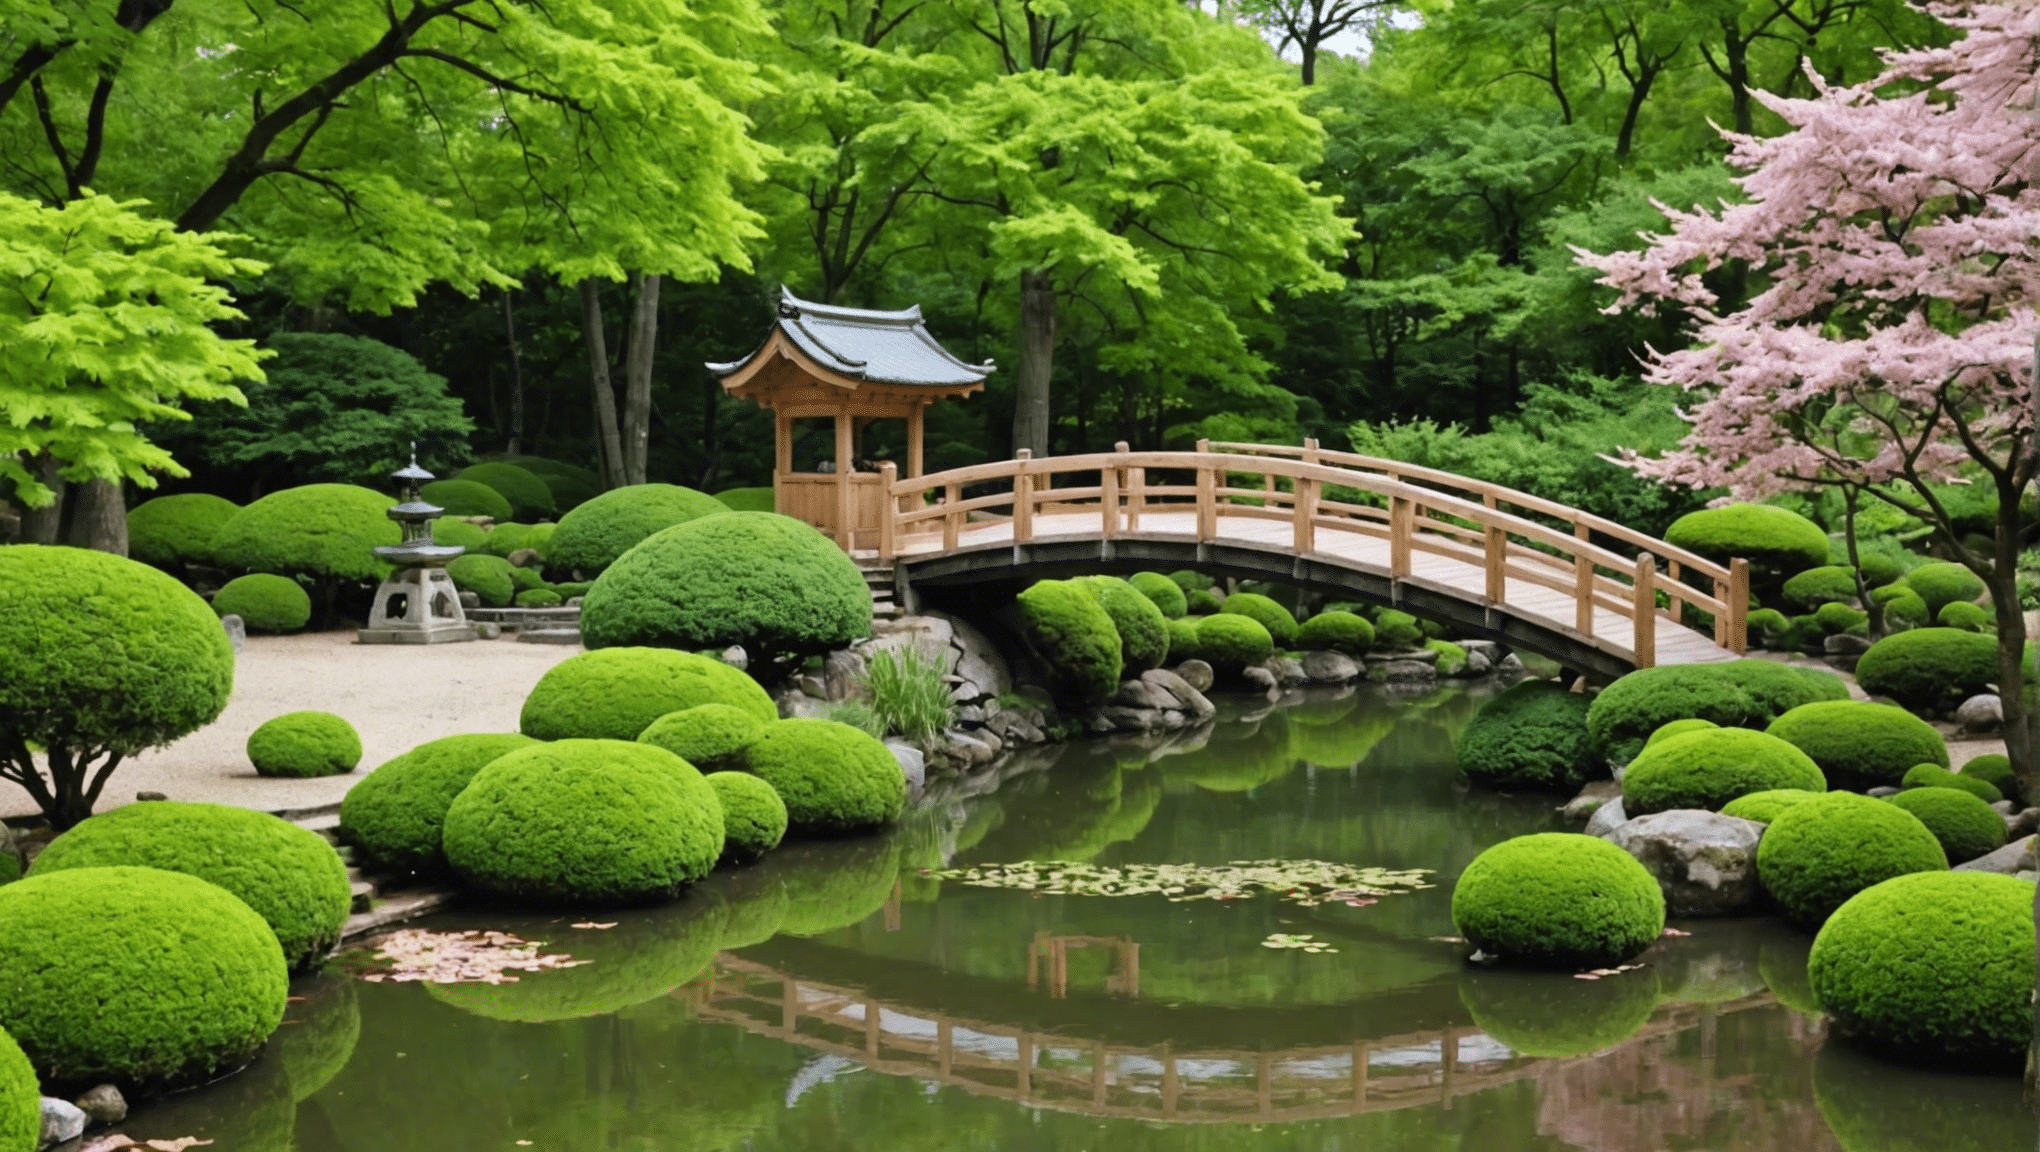 découvrez pourquoi le jardin japonais de dijon exerce un tel pouvoir de captivation et d'émerveillement grâce à ses harmonieuses compositions végétales et à sa sérénité unique.